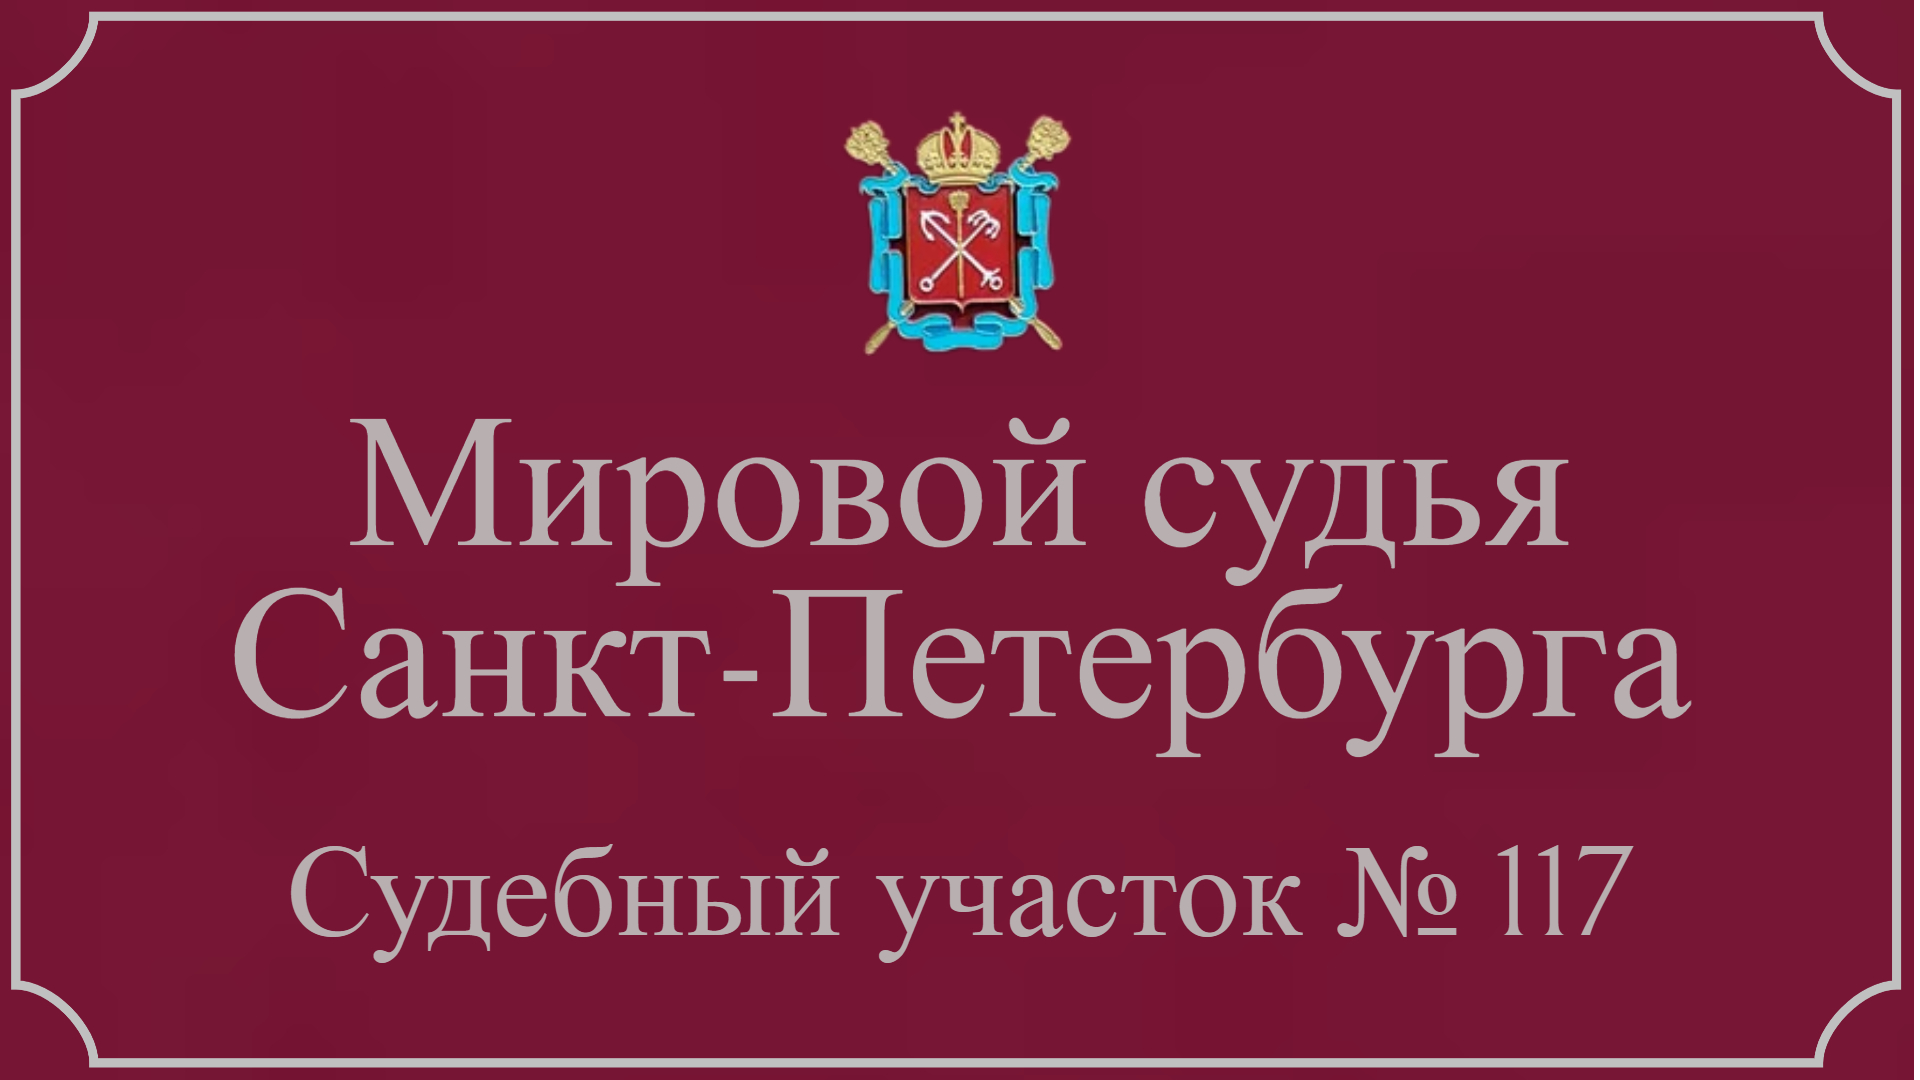 Информация по 117 судебному участку в Санкт-Петербурге.